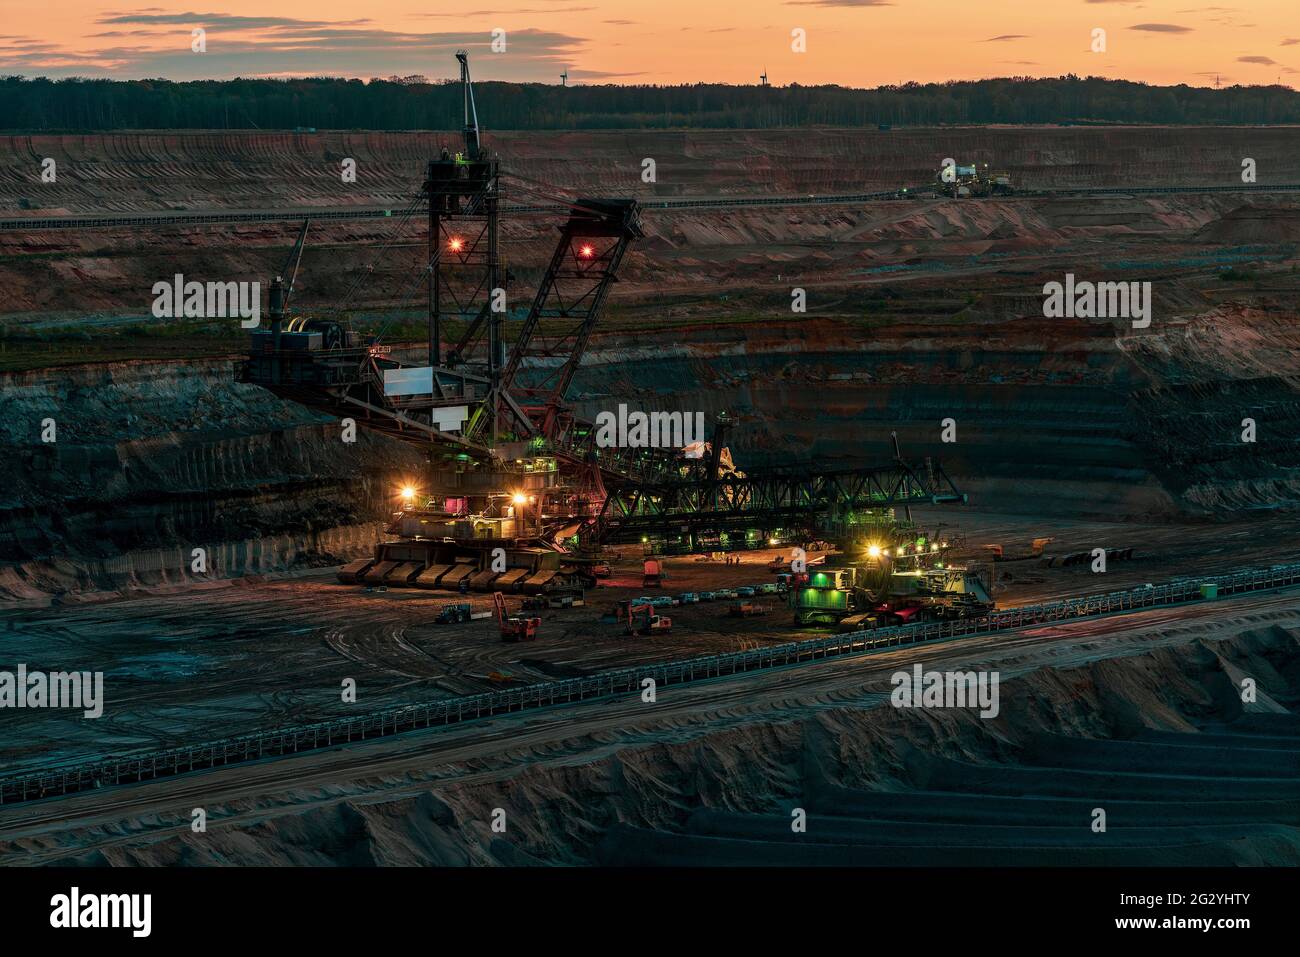 Escavatore gommato a benna 258 nella miniera d'opencast di Hambach, Germania. Foto Stock